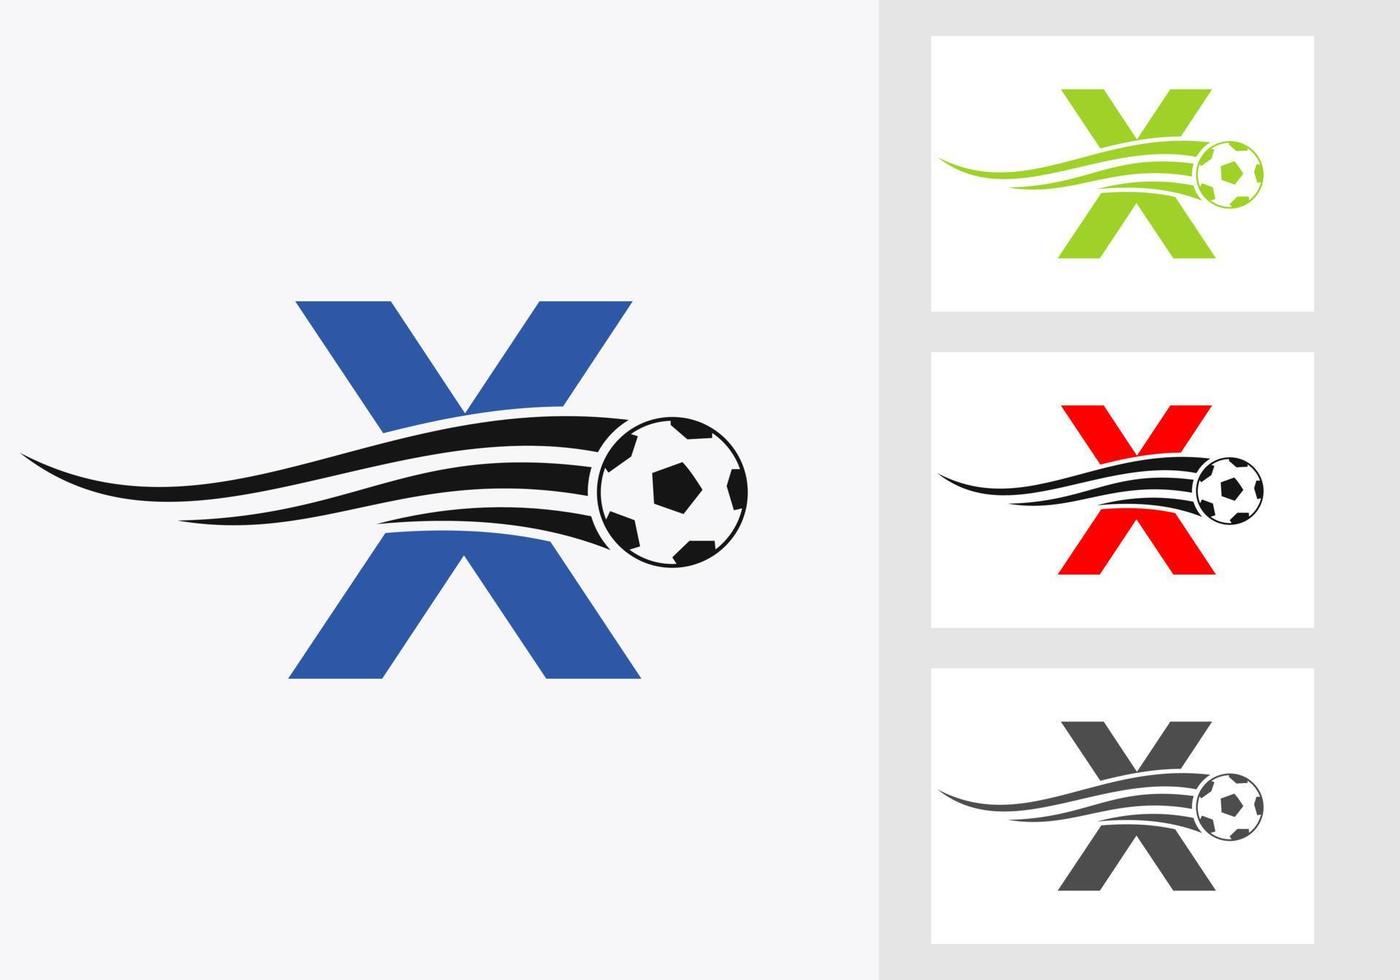 logo de football de football sur le signe de la lettre x. concept d'emblème de club de football d'icône d'équipe de football vecteur